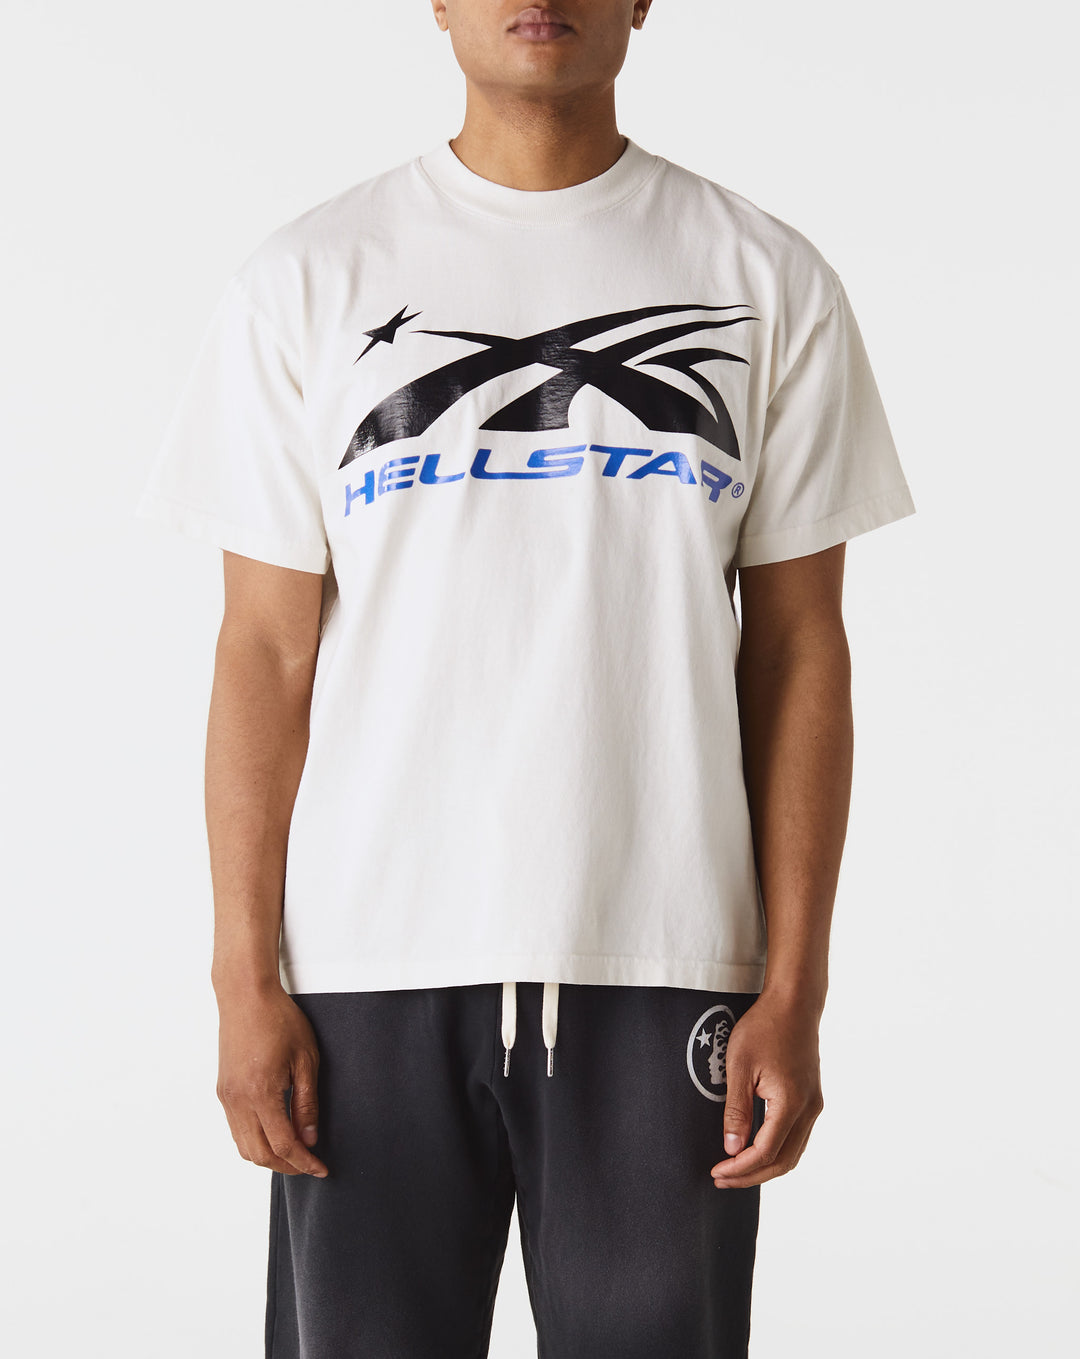 Hellstar Pro Players Cricket Sweatshirt Juniors  - Cheap Atelier-lumieres Jordan outlet